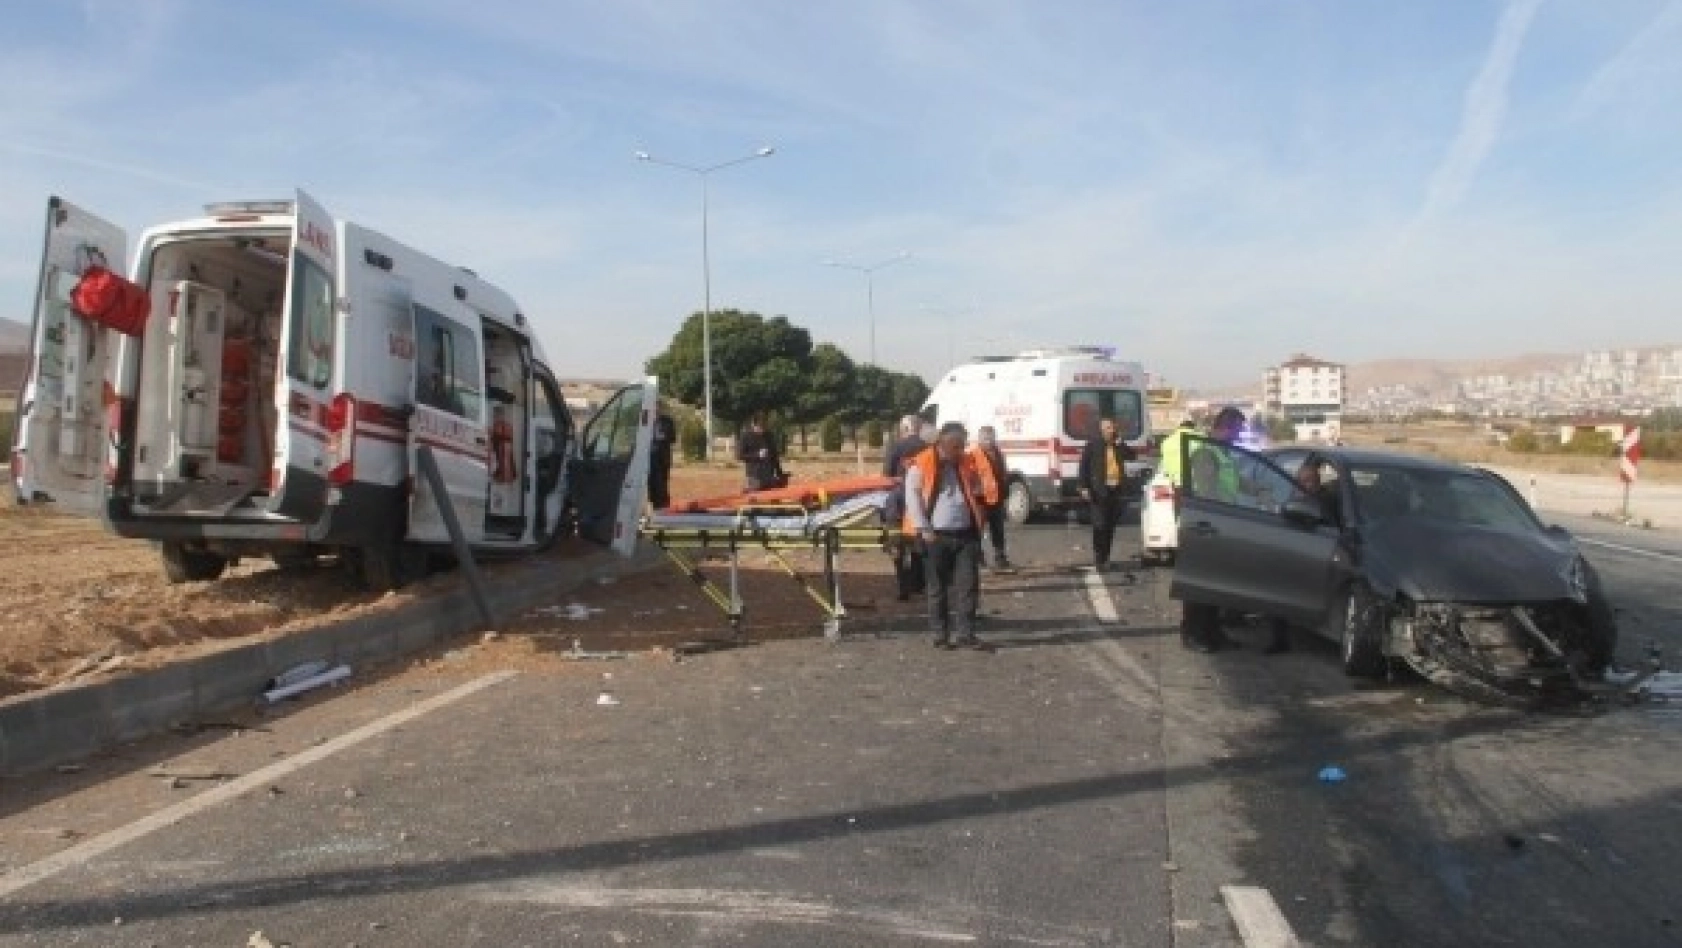 Elazığ'da ambulans ile otomobil çarpıştı: 1'i ağır 7 yaralı